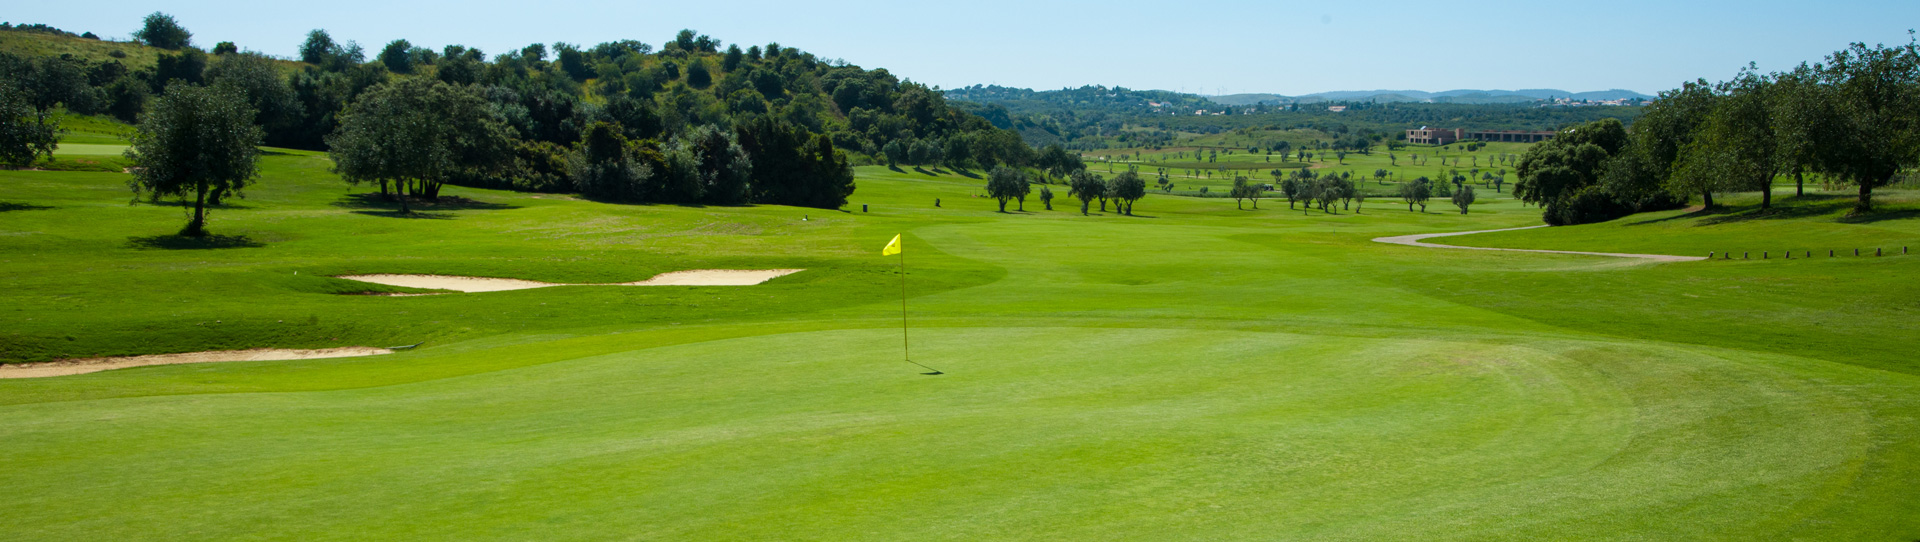 Portugal golf courses - Morgado Golf Course - Photo 1